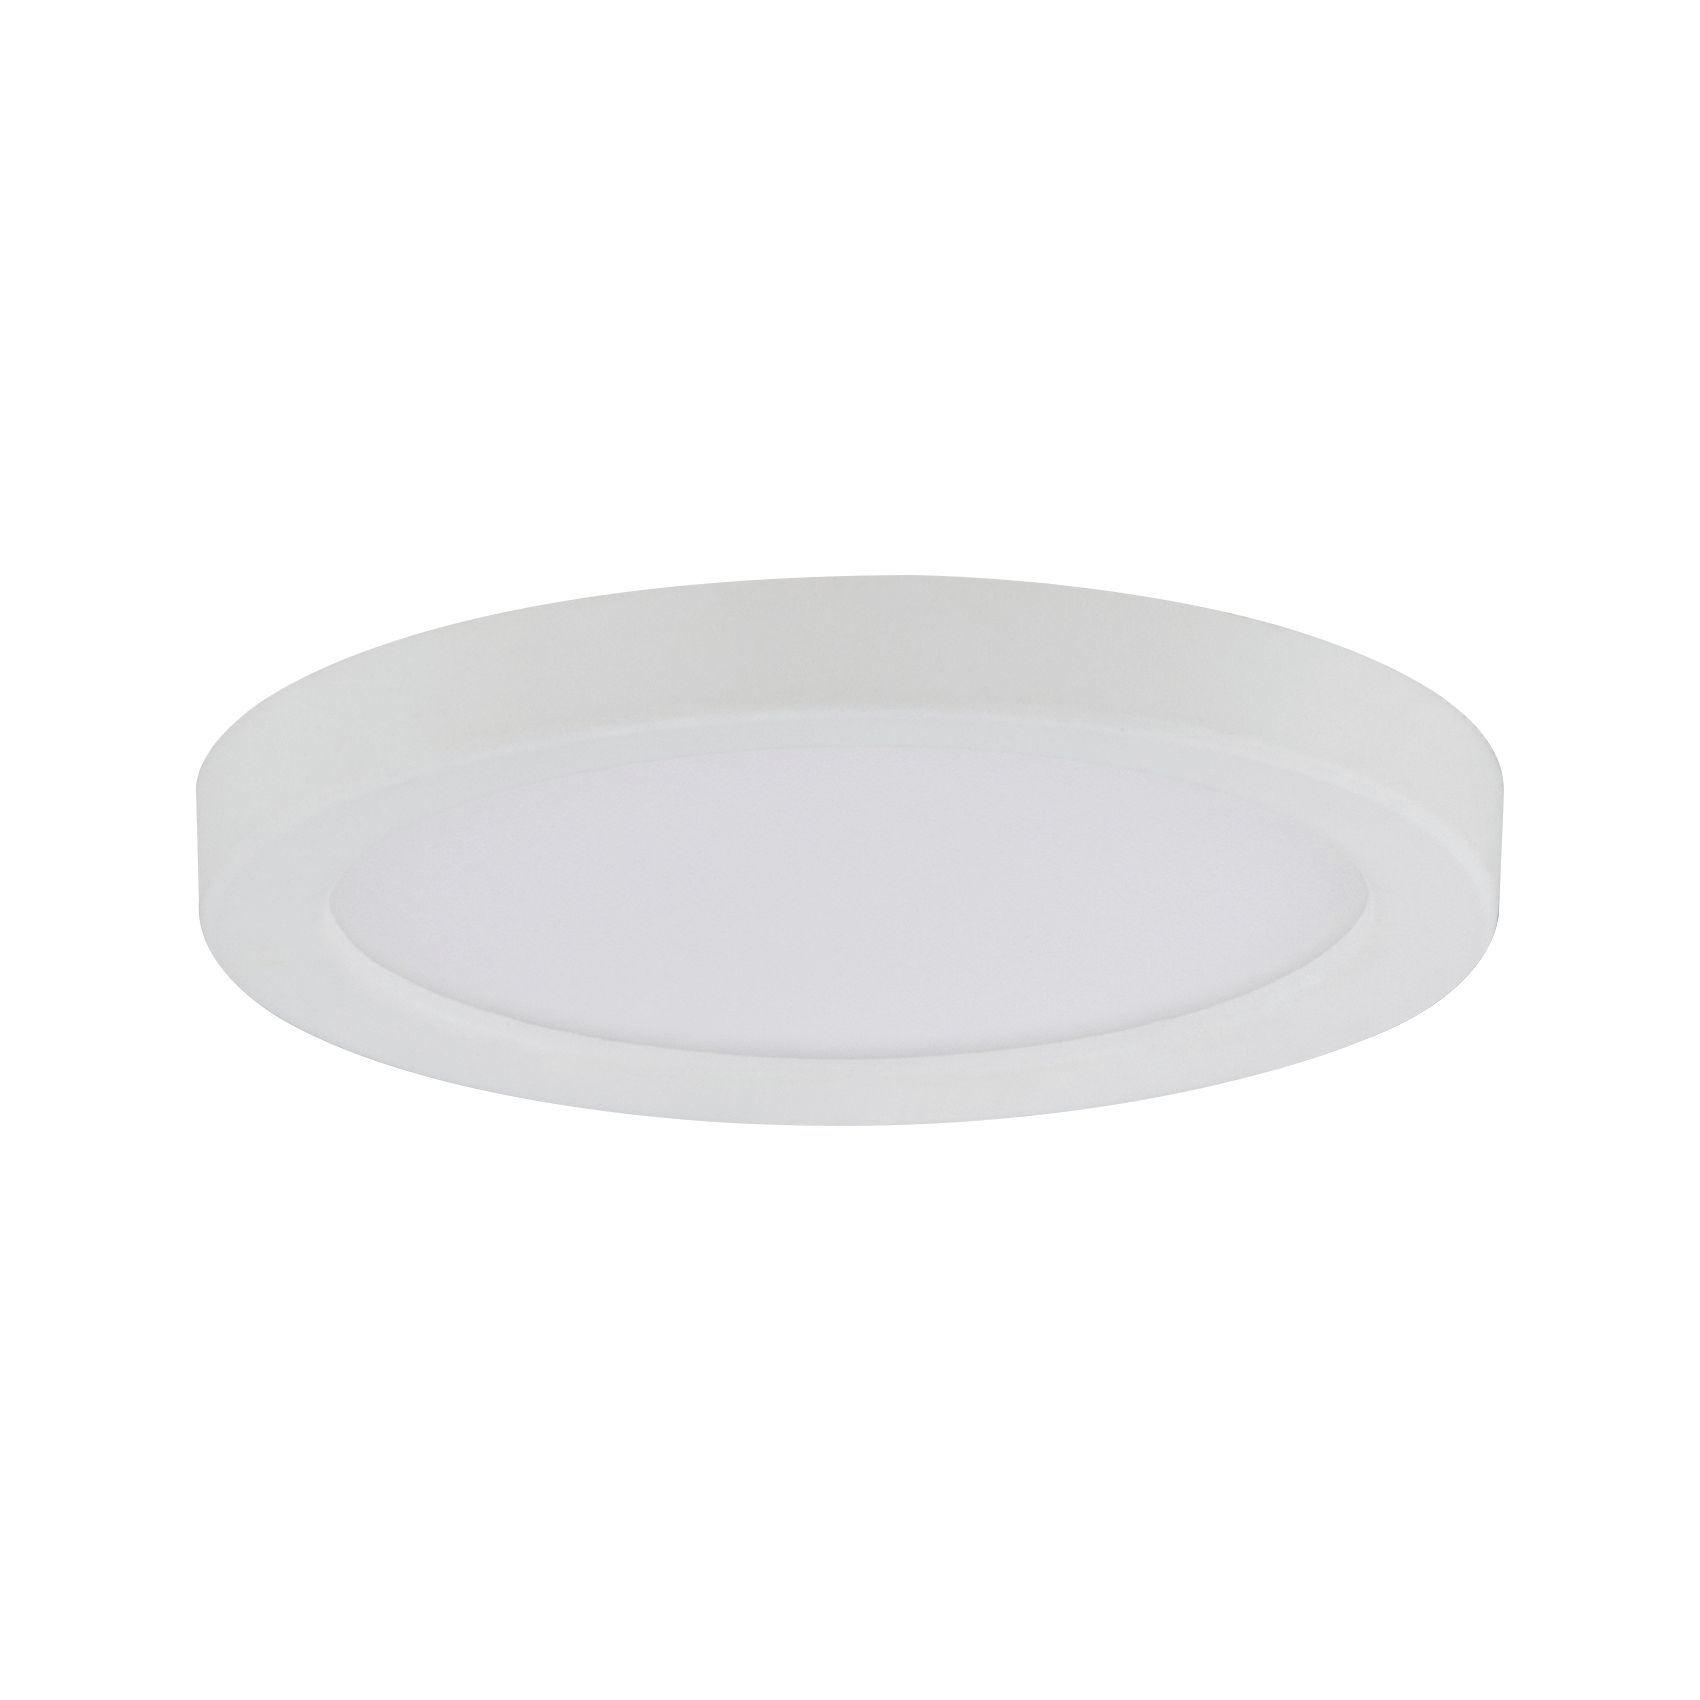 LED-PANEEL  - Weiß, Basics, Kunststoff (8cm) - Paulmann